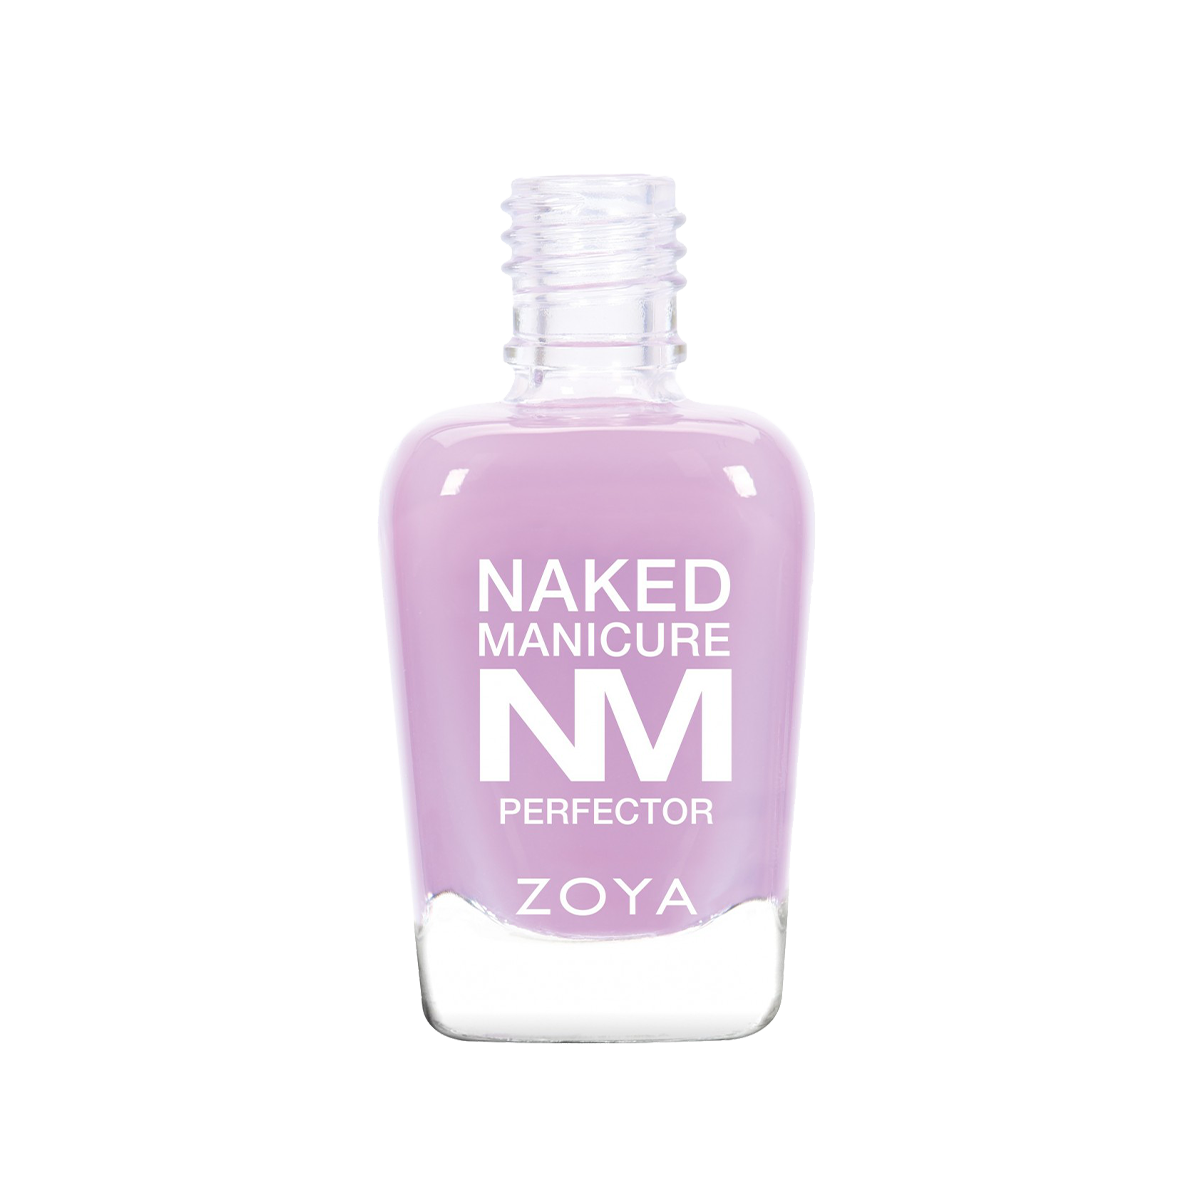 Naked Manicure Lavender Prefector <br> 15ml